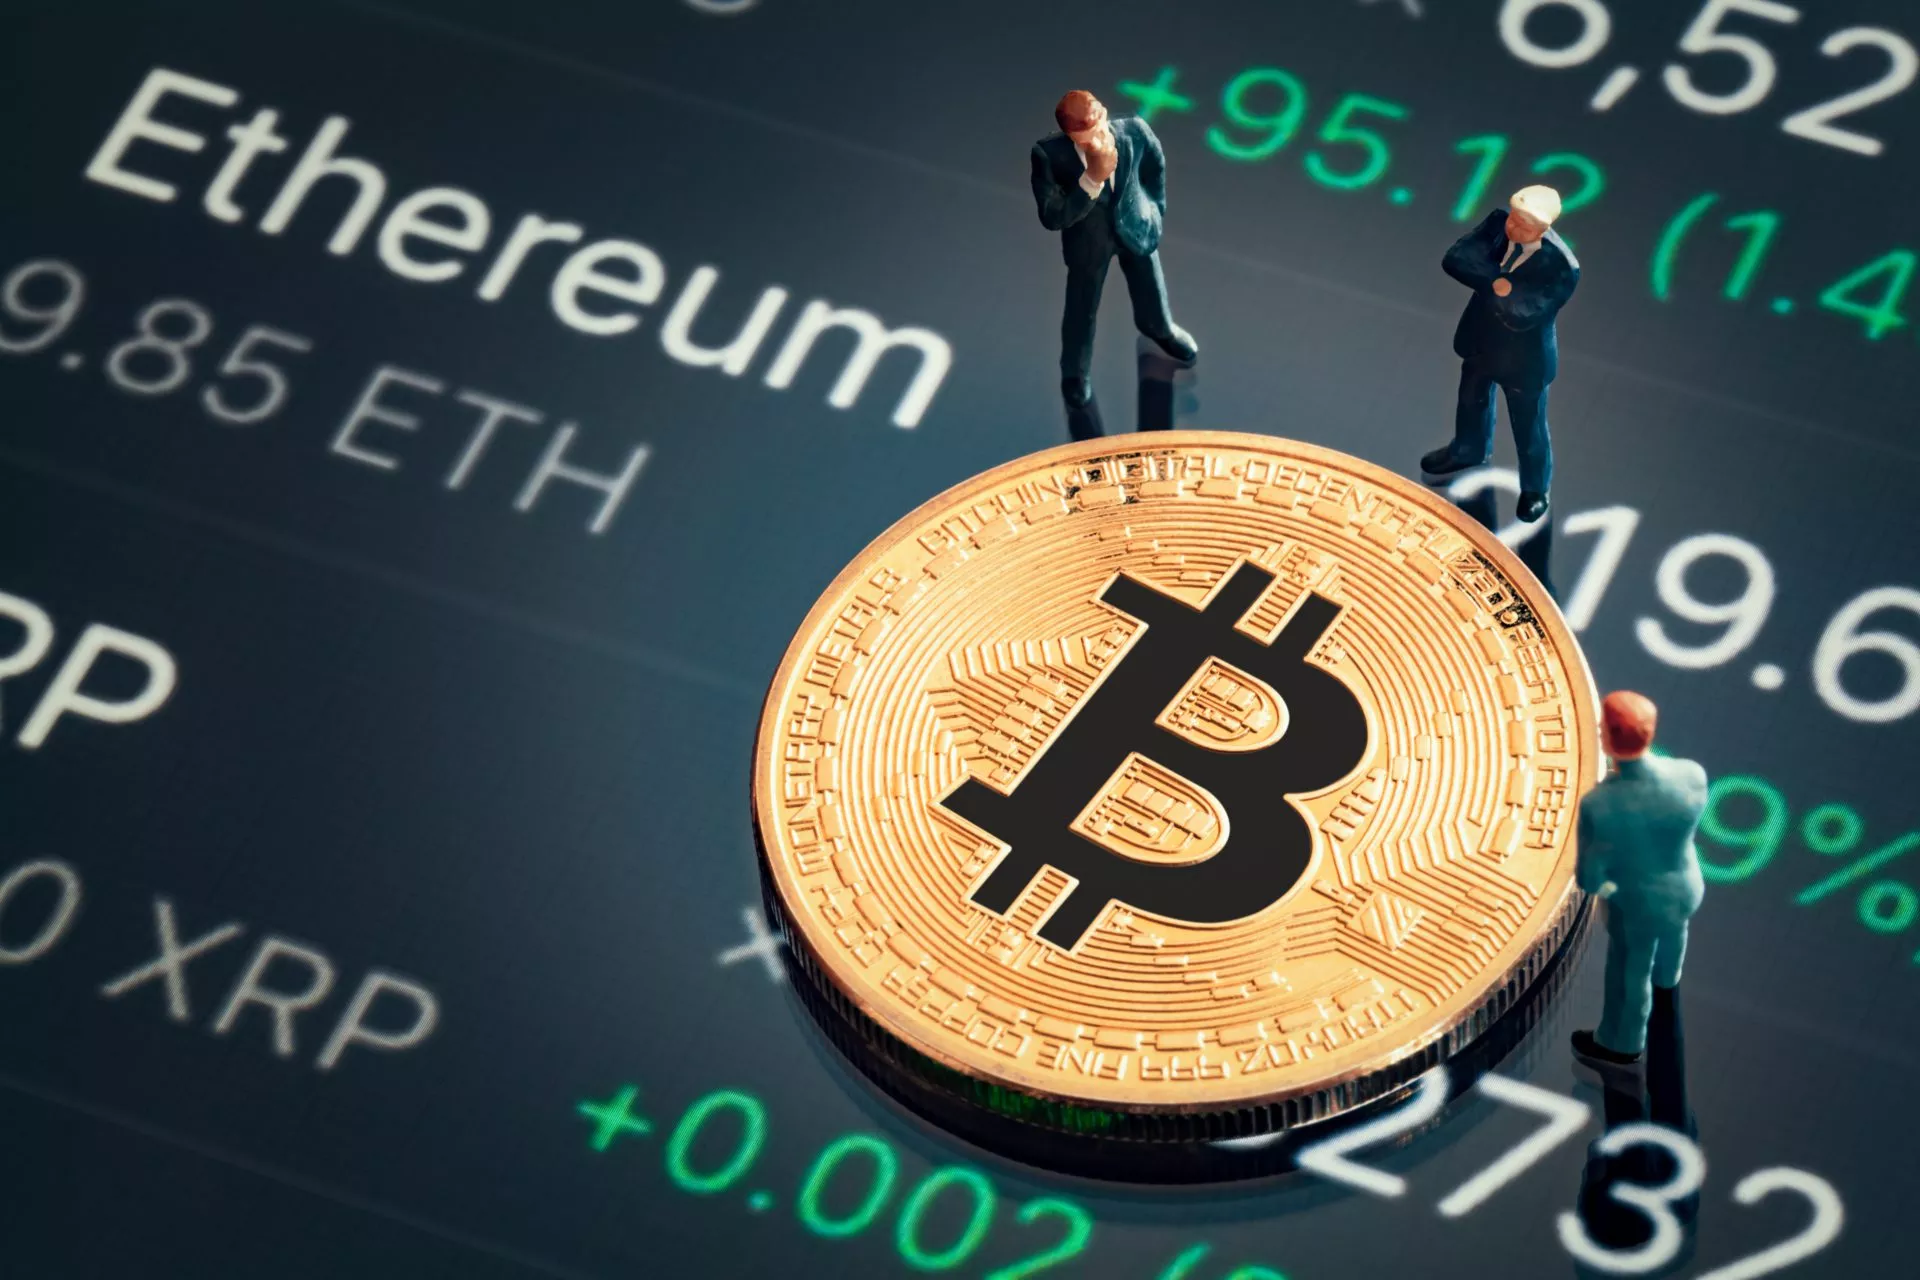 Bloomberg analist: Bitcoin prijs kan in 2021 enorm stijgen